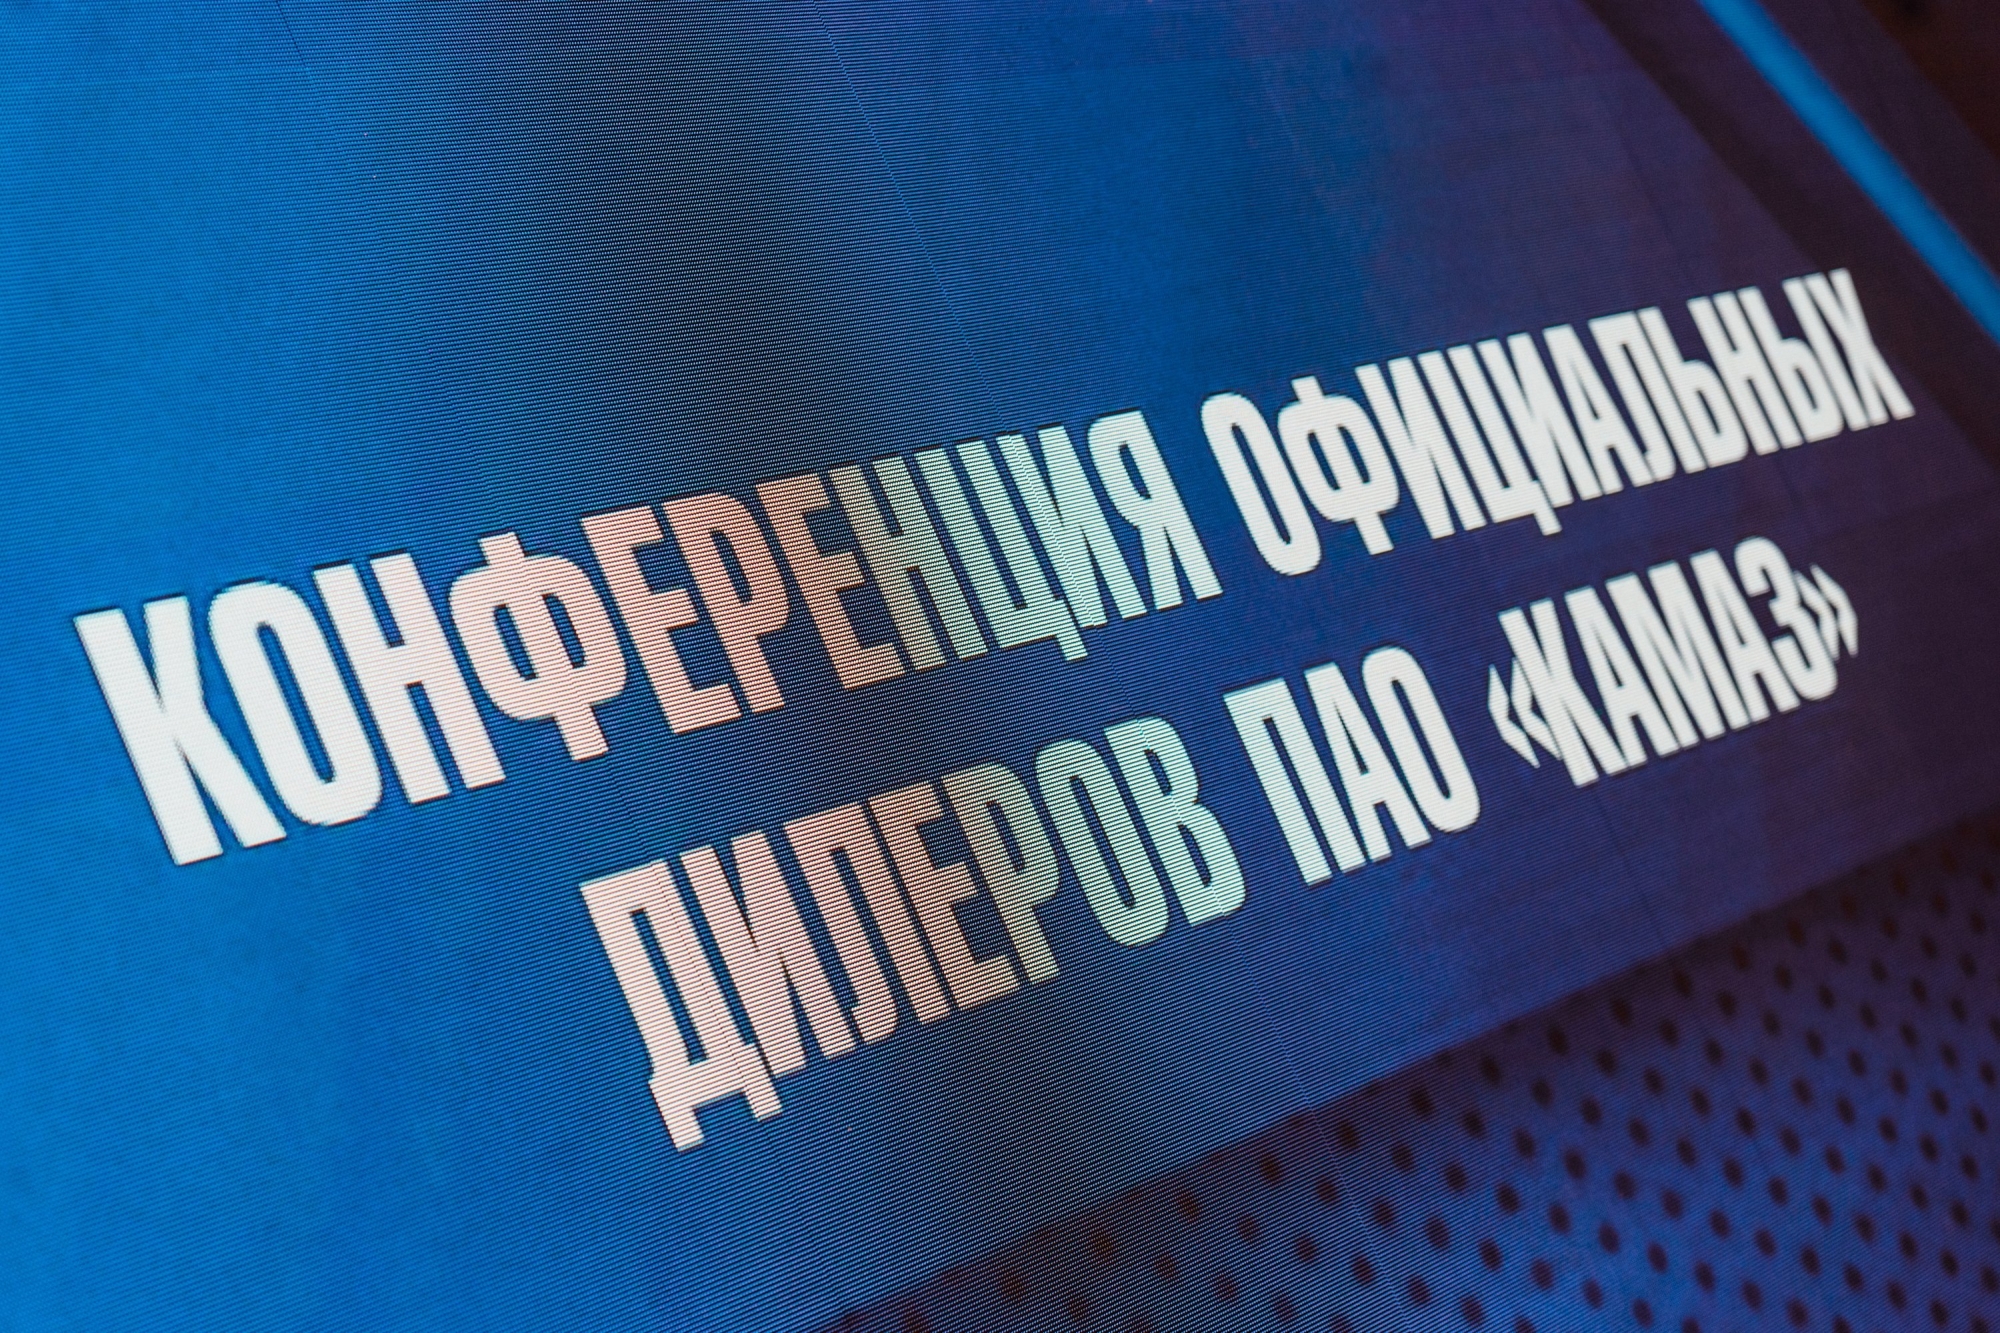 Когогин на конференции дилеров «КАМАЗа»: «Мы знаем, что делать»